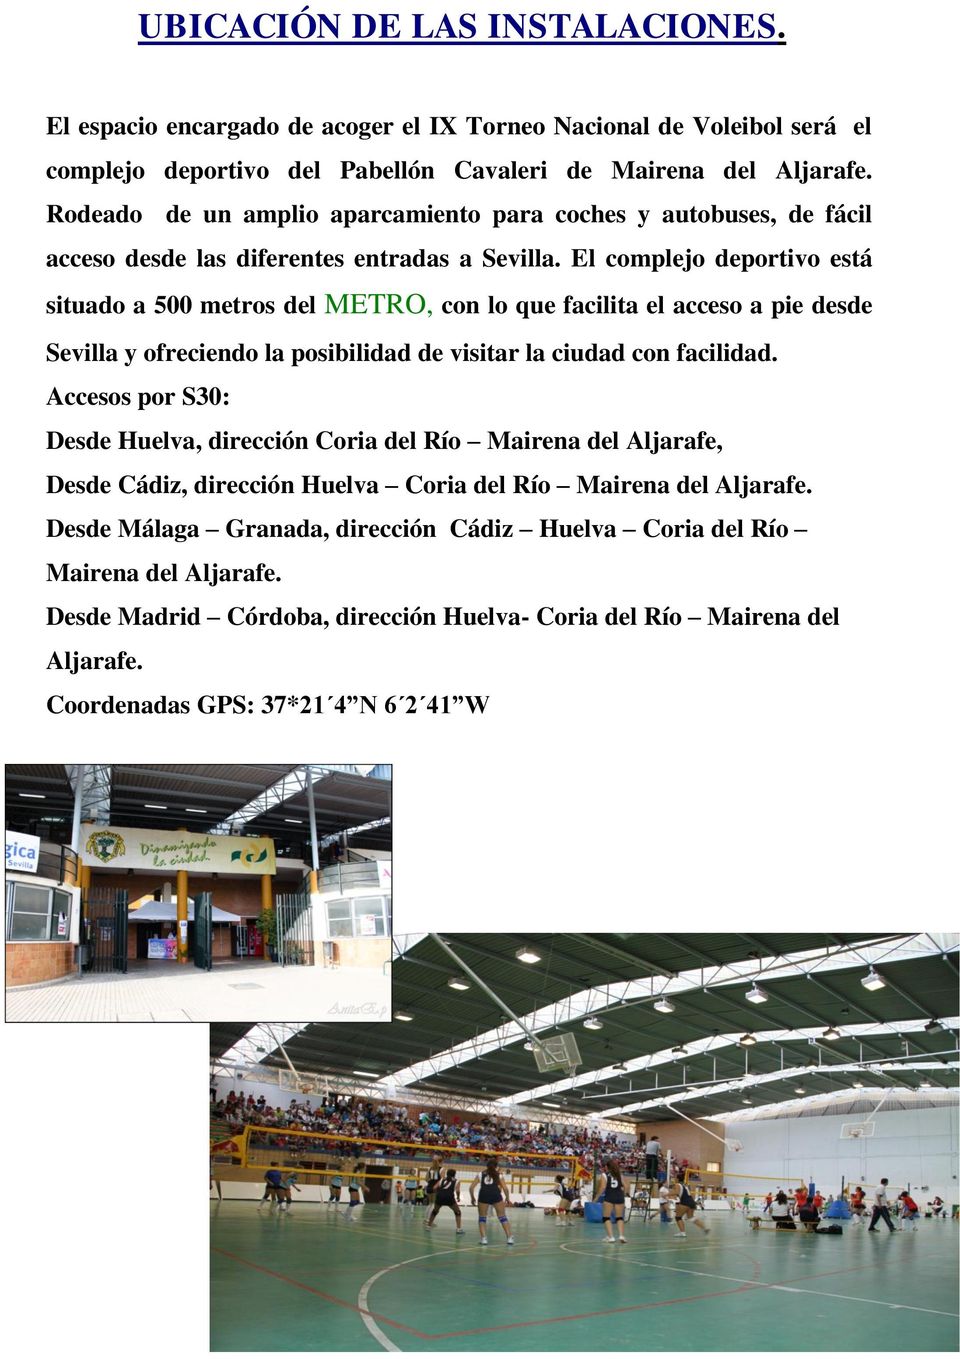 El complejo deportivo está situado a 500 metros del METRO, con lo que facilita el acceso a pie desde Sevilla y ofreciendo la posibilidad de visitar la ciudad con facilidad.